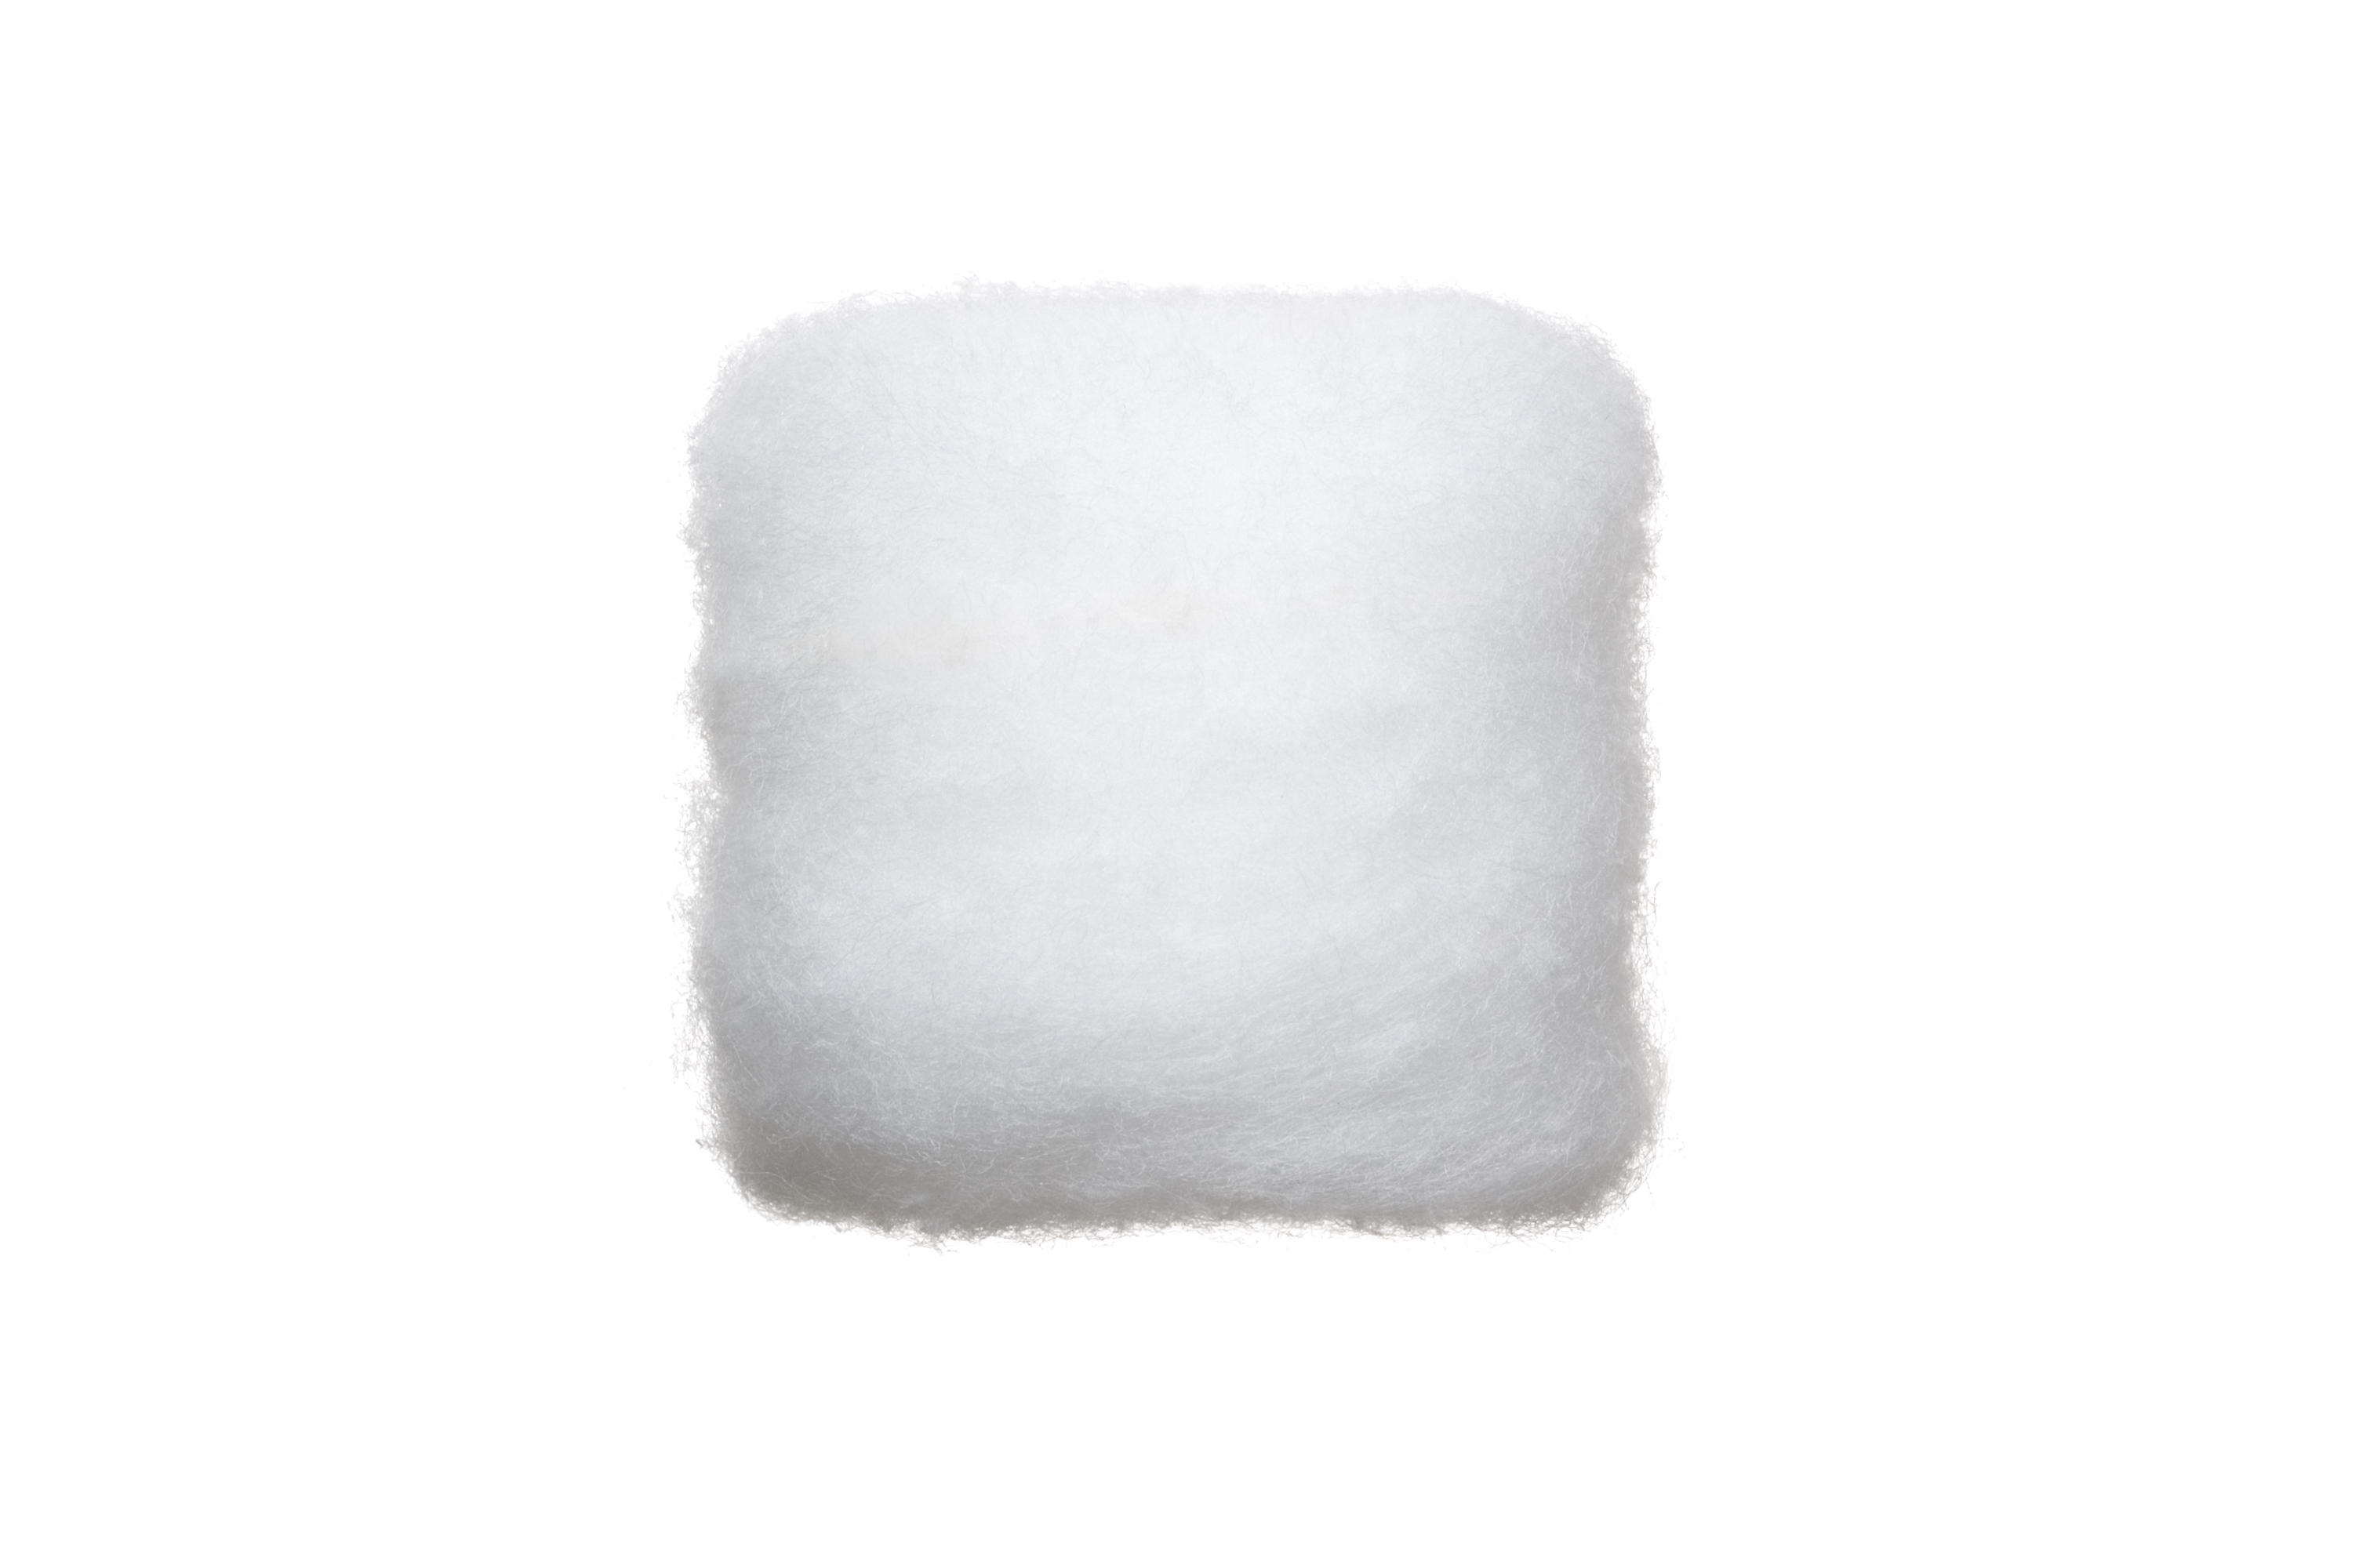 注目ショップ・ブランドのギフト SOFIA 手芸綿 ふっくら 300g入 1袋 定形外送料無料 ディスプレイ クッション<br> 